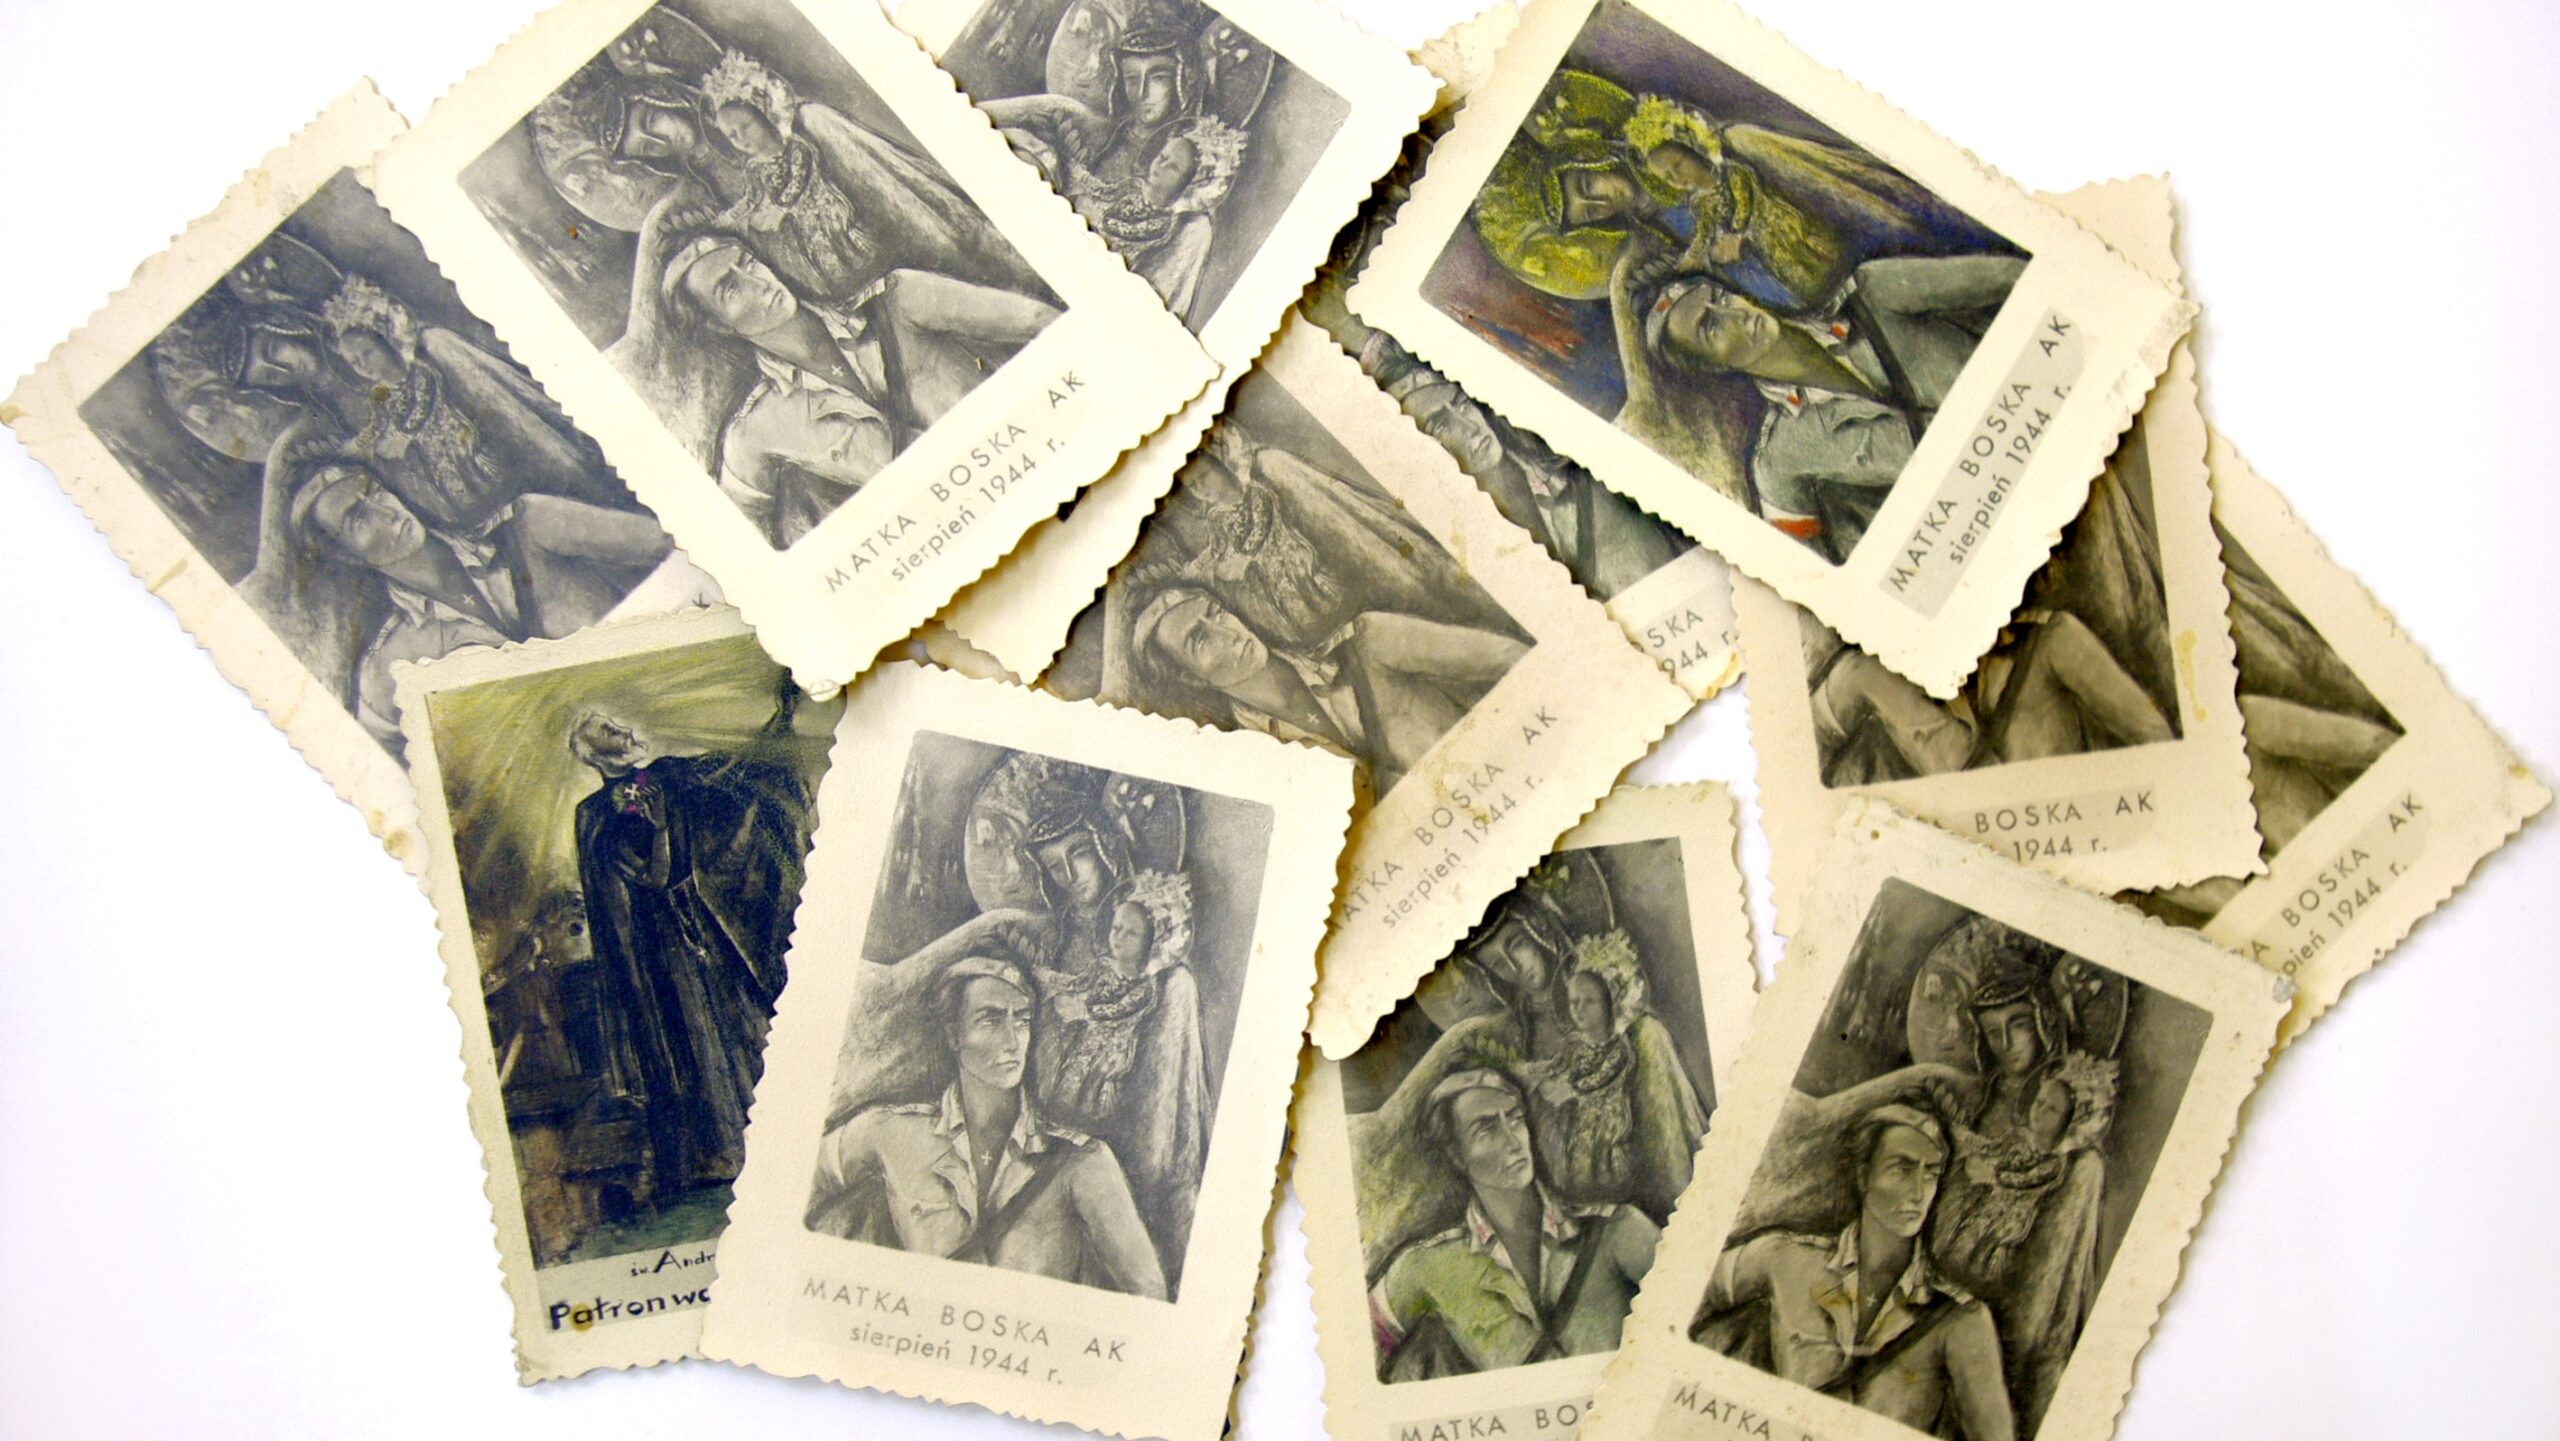 Reprodukcje obrazu „Matka Boska AK” na rozsypanych pocztówkach, pożółkłych, zniszczonych